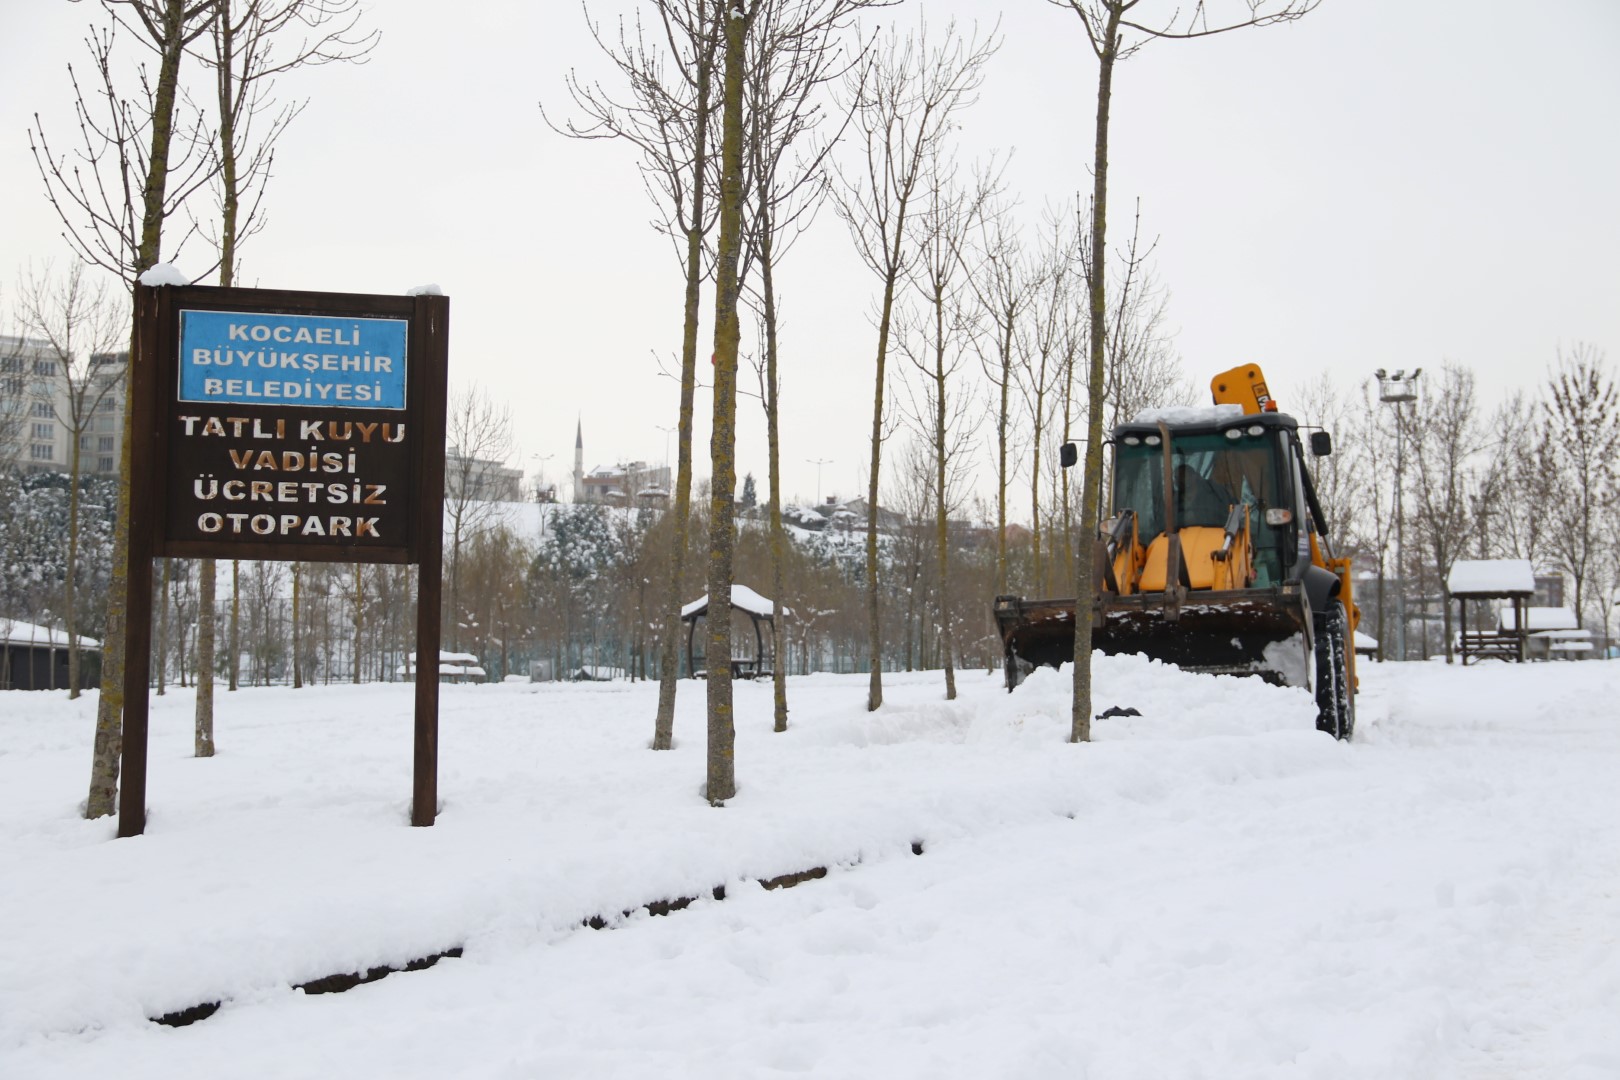 Gebze bölgesindeki parkların otoparkları kardan temizleniyor